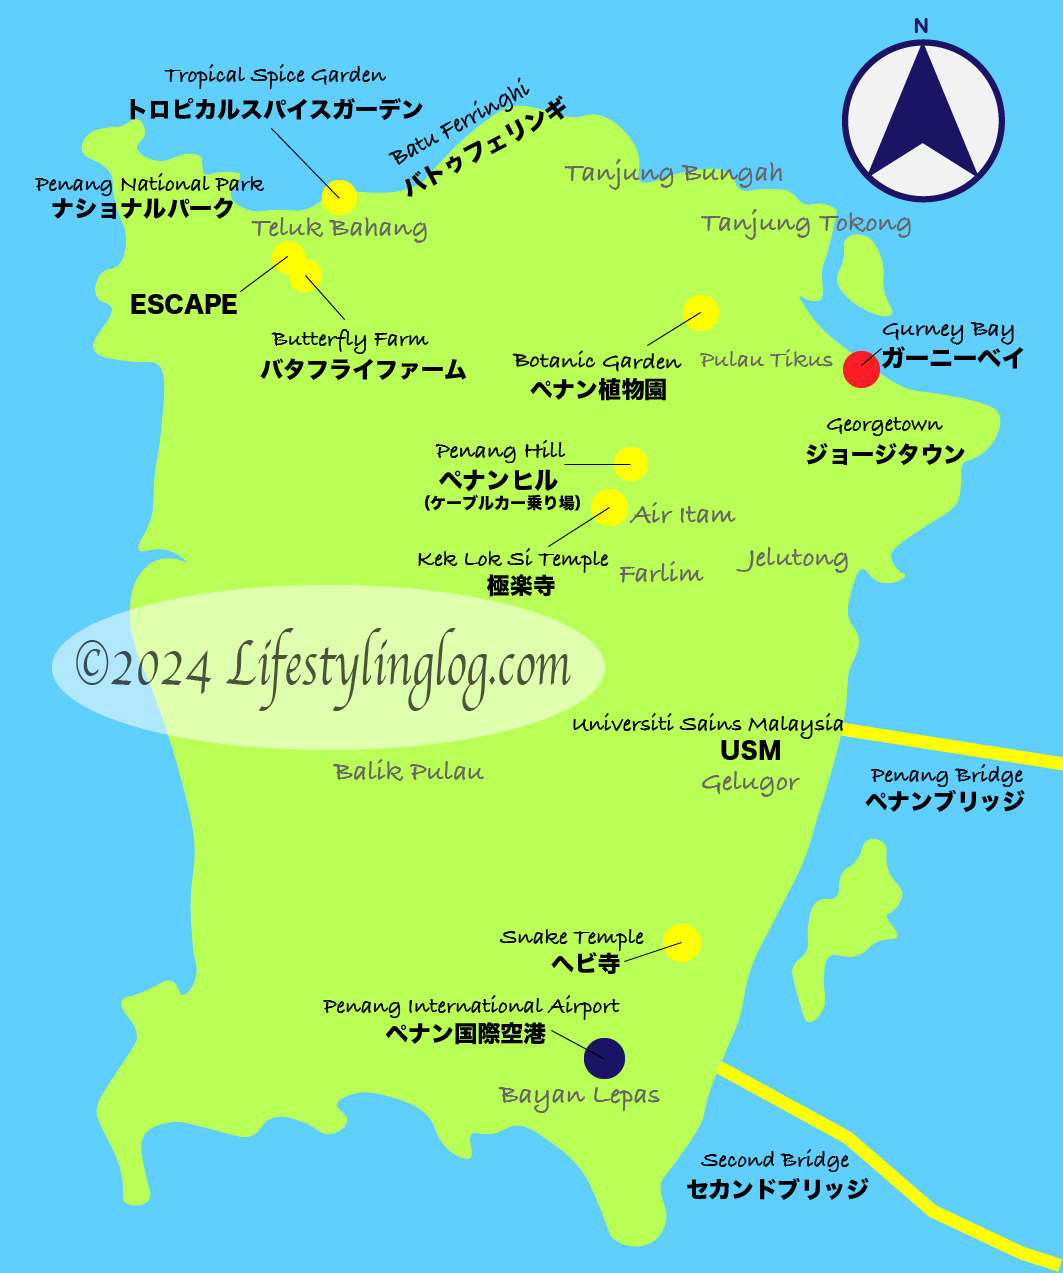 ガーニーベイがある場所を示すペナン島の地図